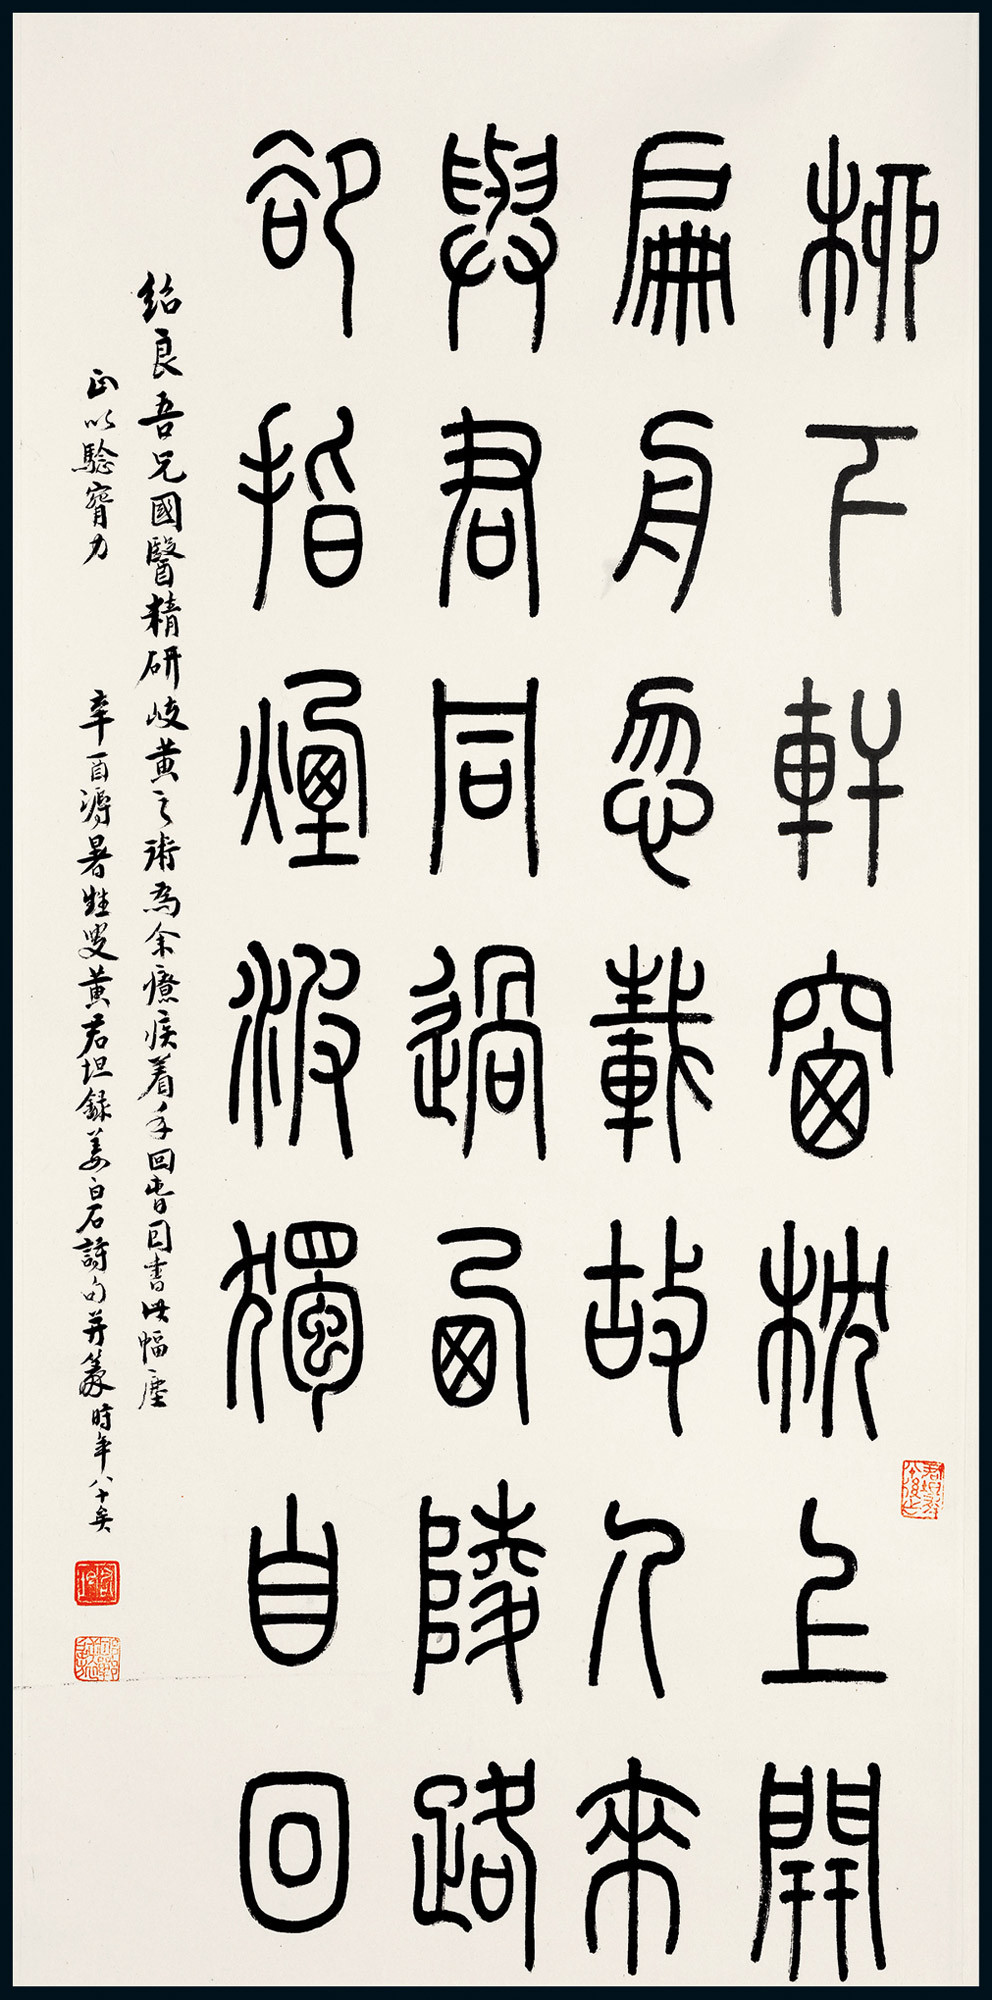 Calligraphy “Poems of Chiang Pai-shek” to Yuan Shao-liang by Hwang Chun-tan